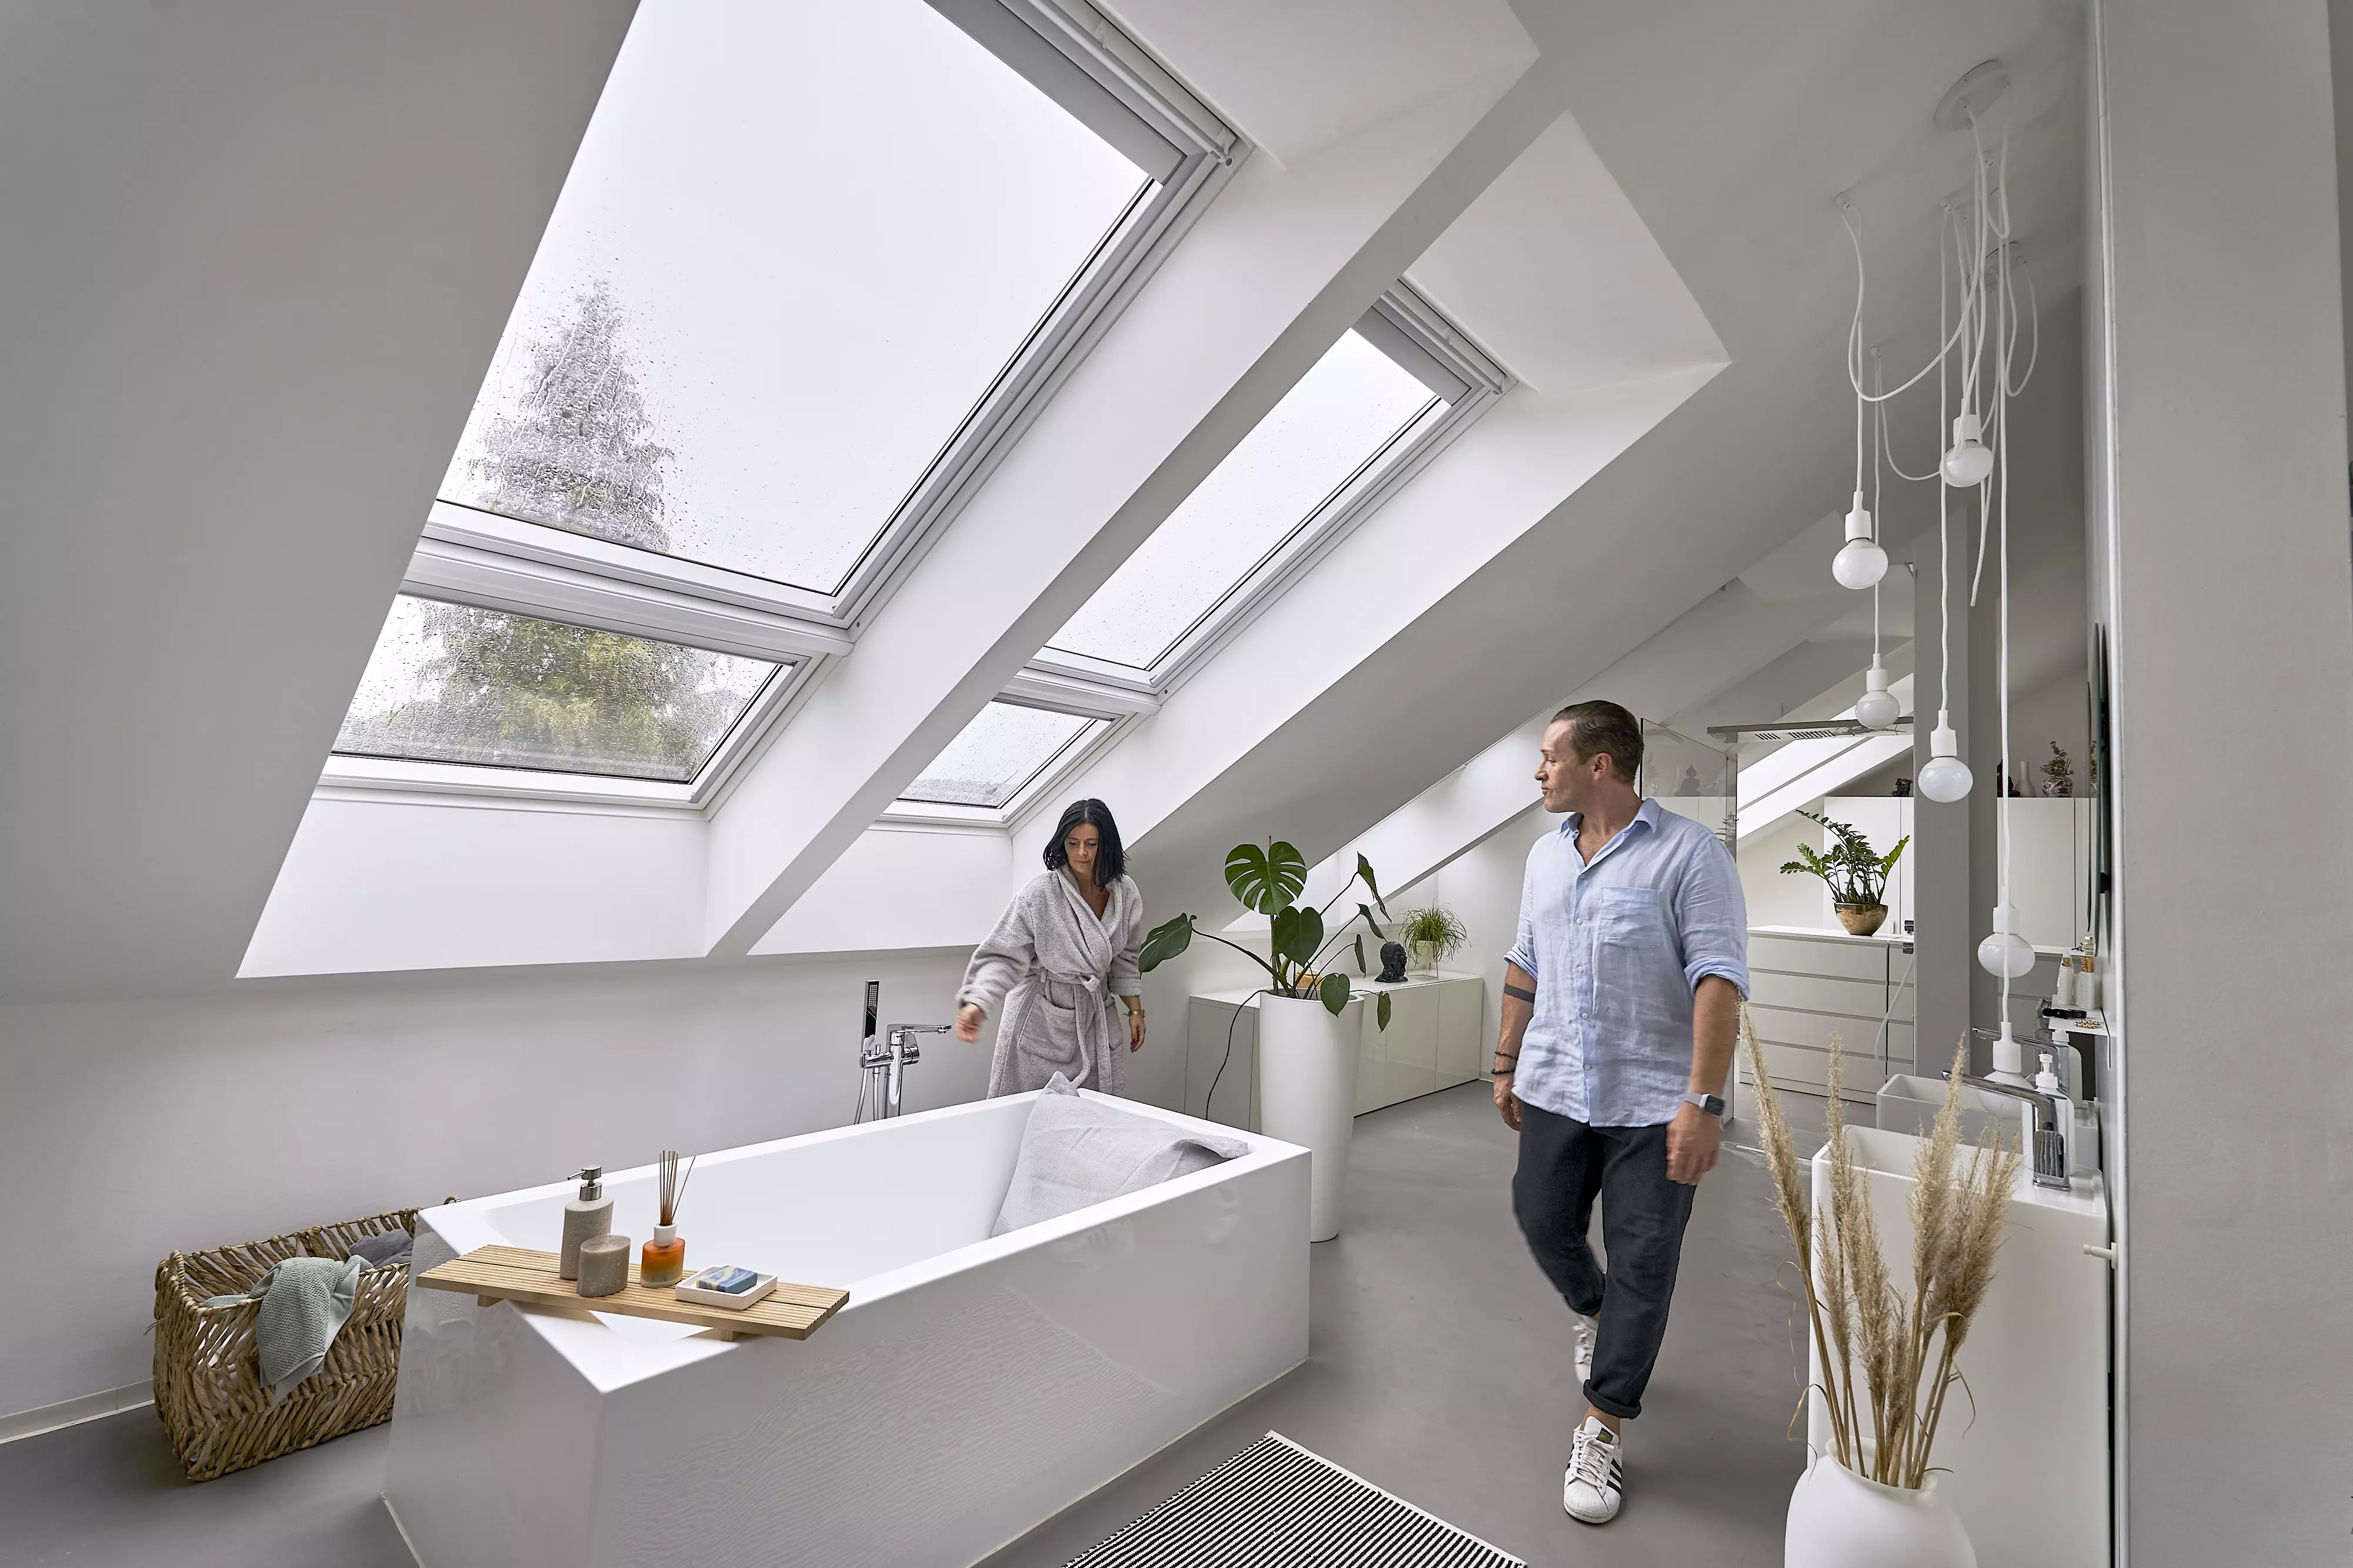 Helles Badezimmer im Dachboden mit VELUX Dachflächenfenstern und minimalistischem Design.